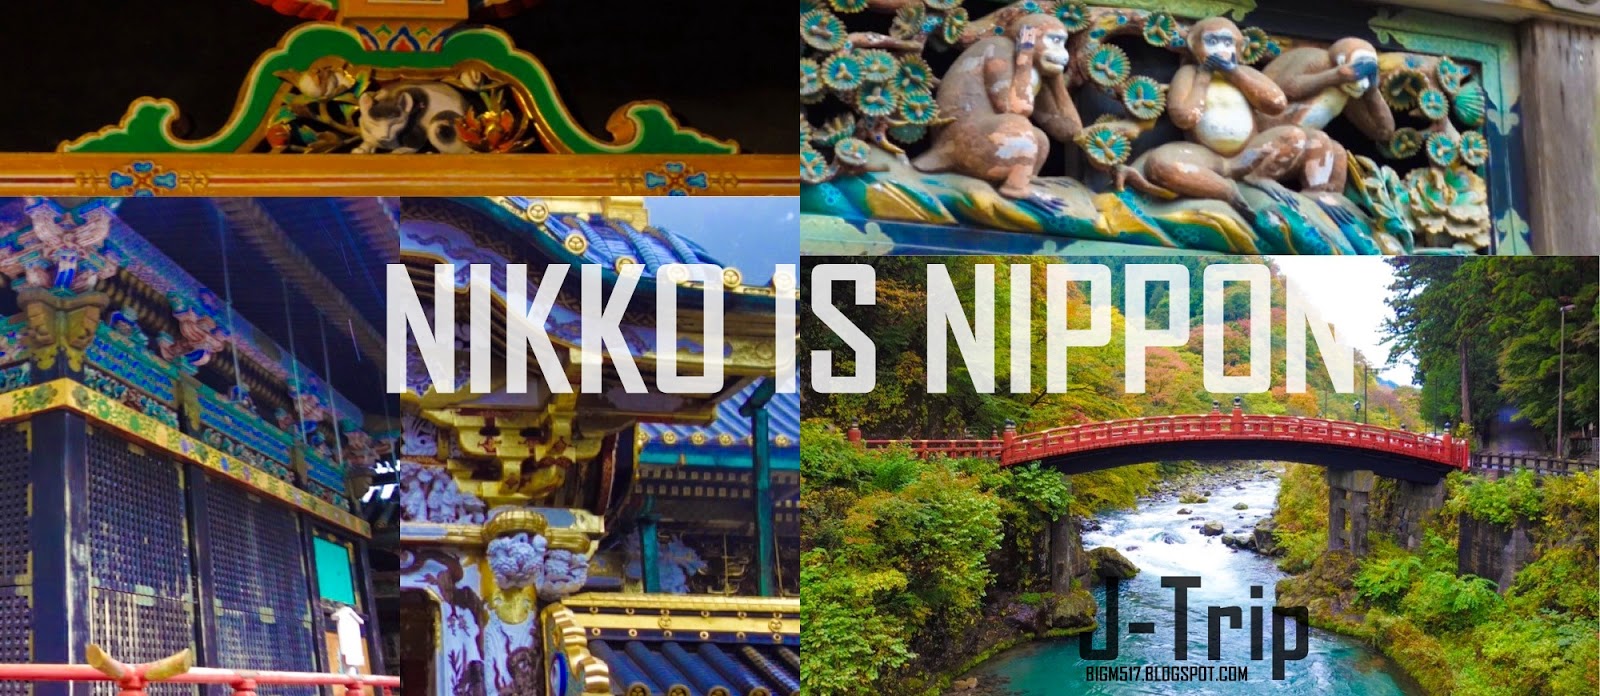 http://bigm517.blogspot.com/2014/11/j-trip-6-nikko-is-nippon.html